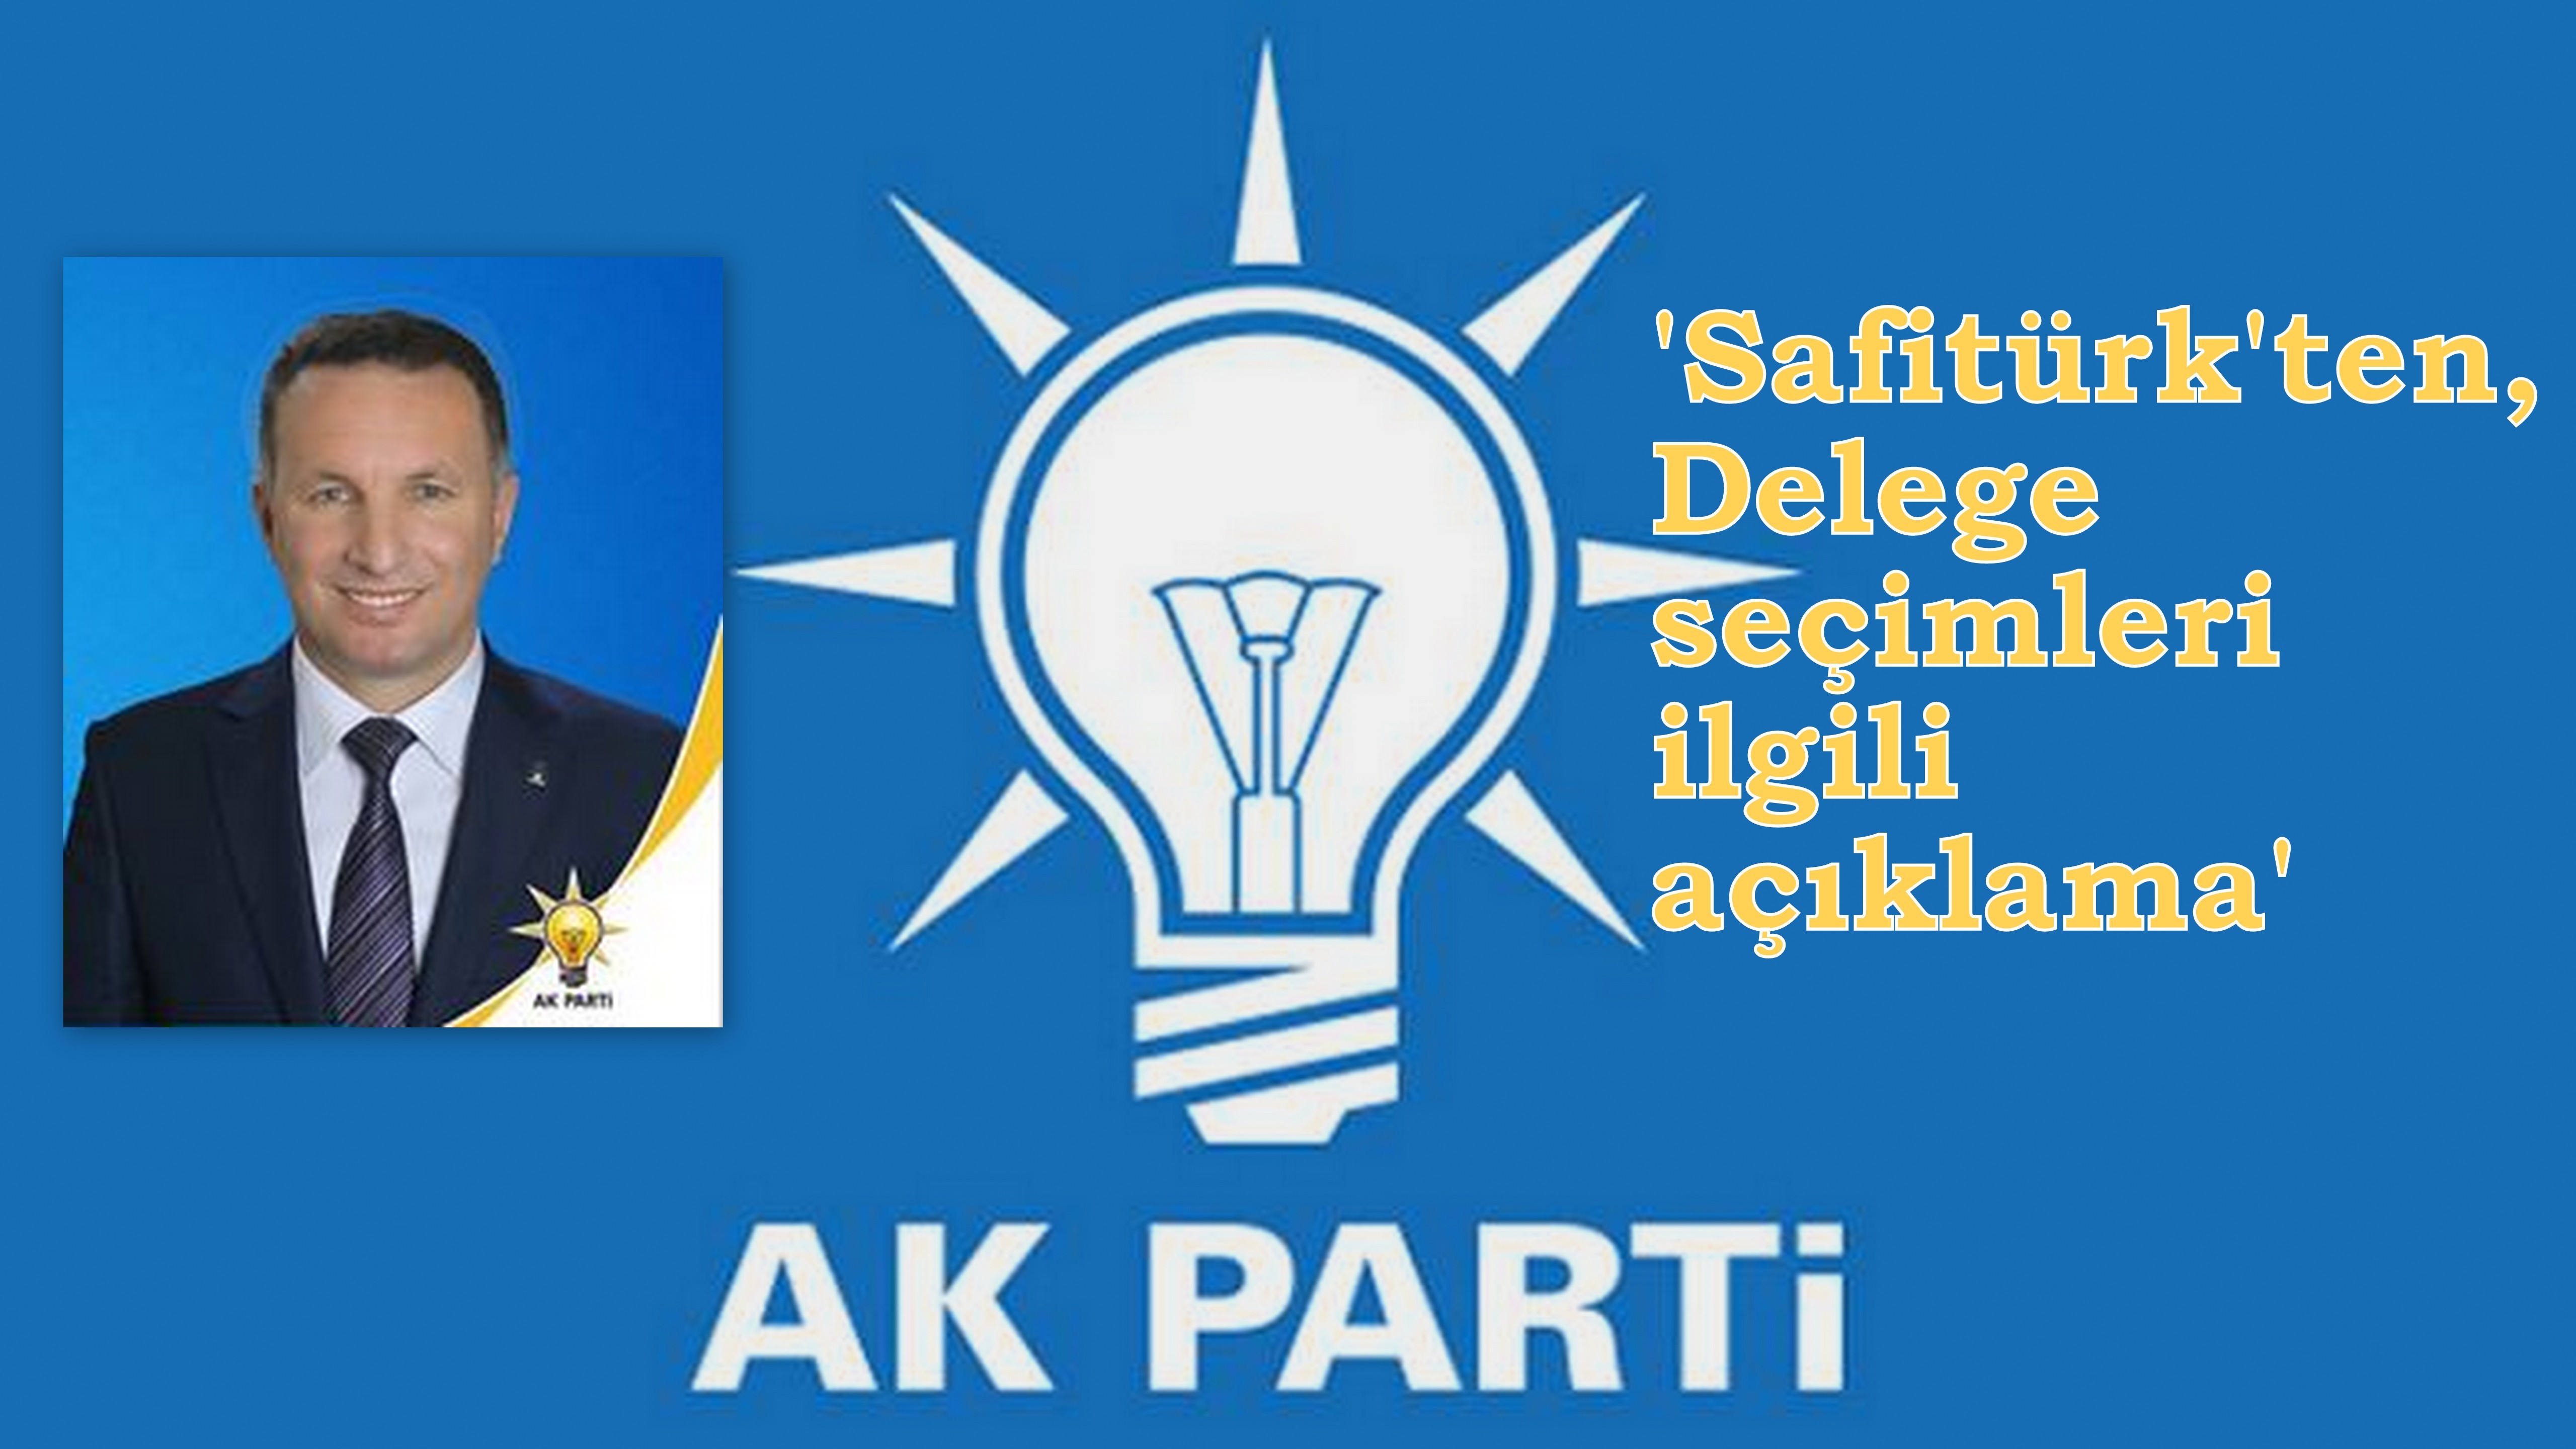 Meclis Üyesi Safitürk’ten Delege seçimleri ile ilgili açıklama